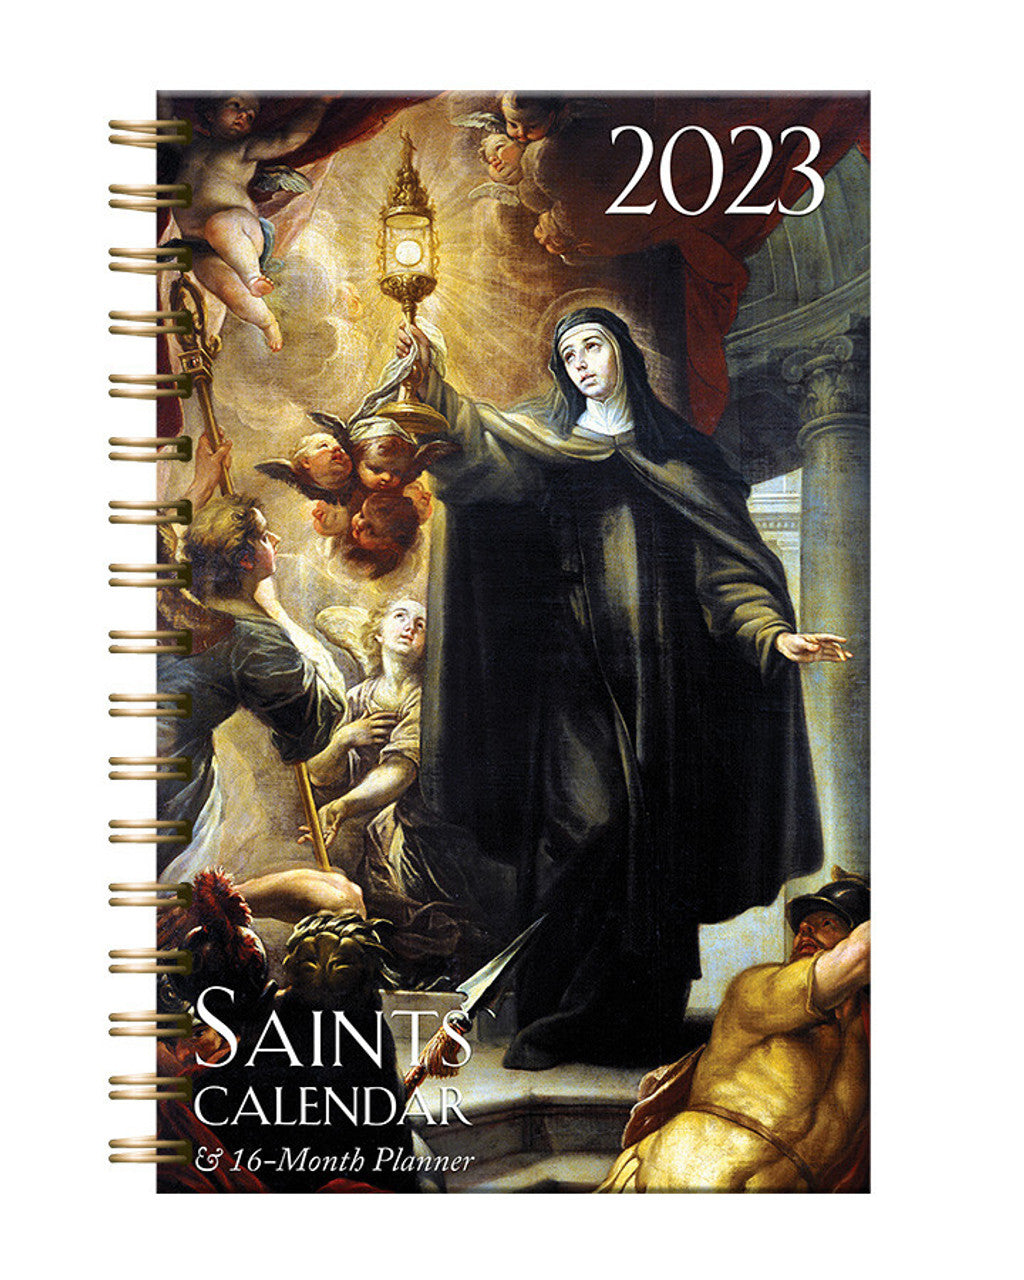 Calendario católico de Santos y planificador diario de 16 meses 2023 encuadernado en espiral 